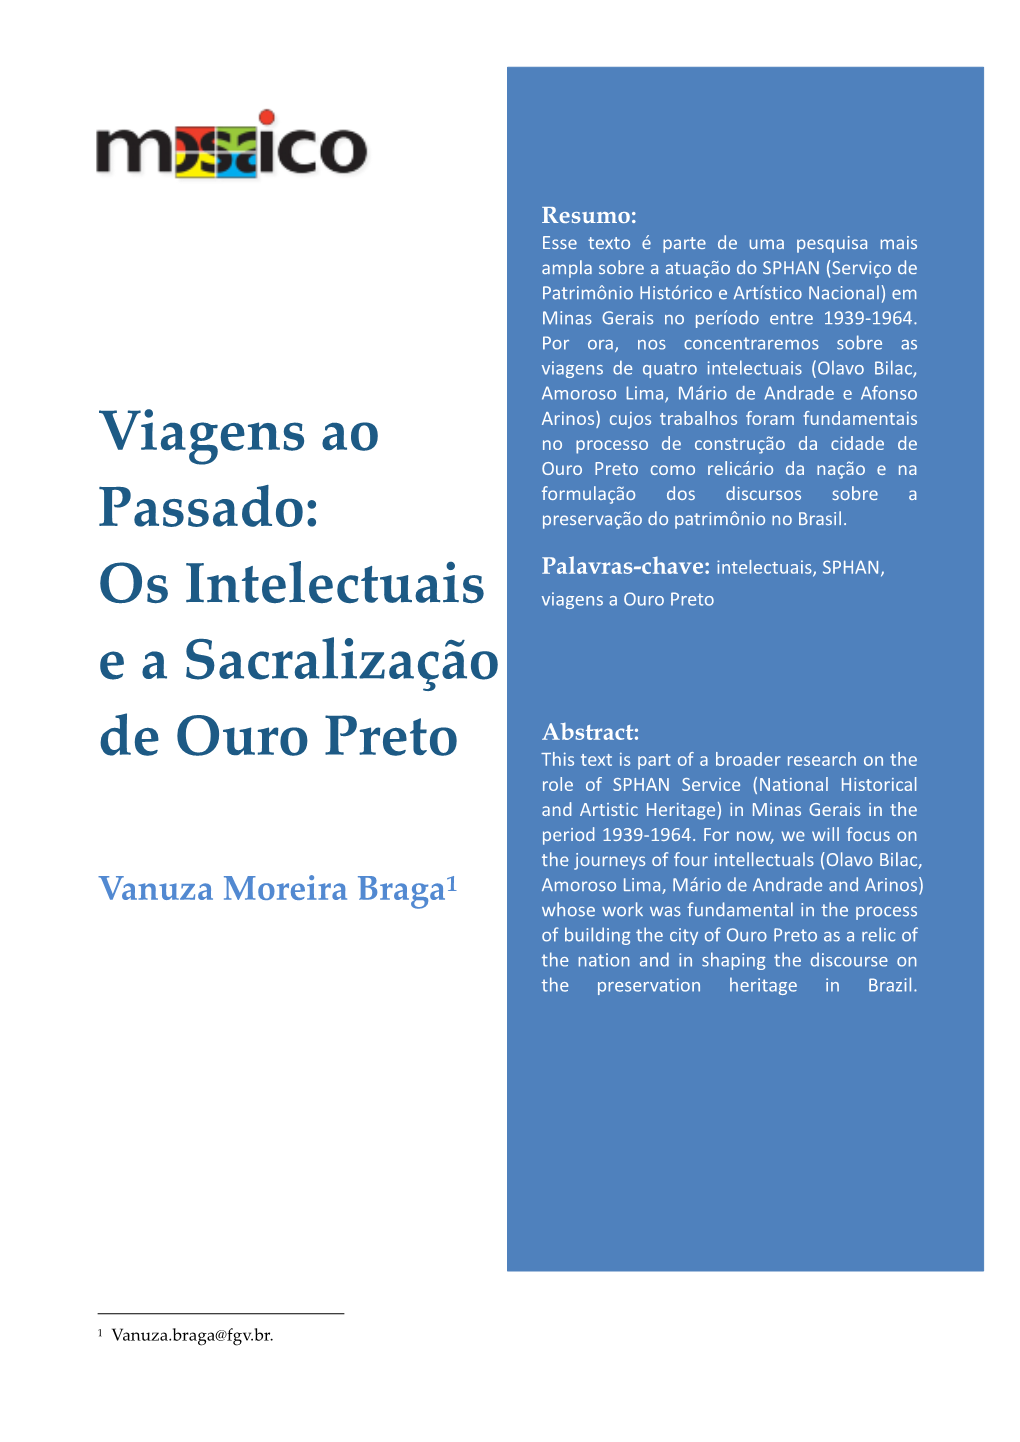 Os Intelectuais E a Sacralização De Ouro Preto